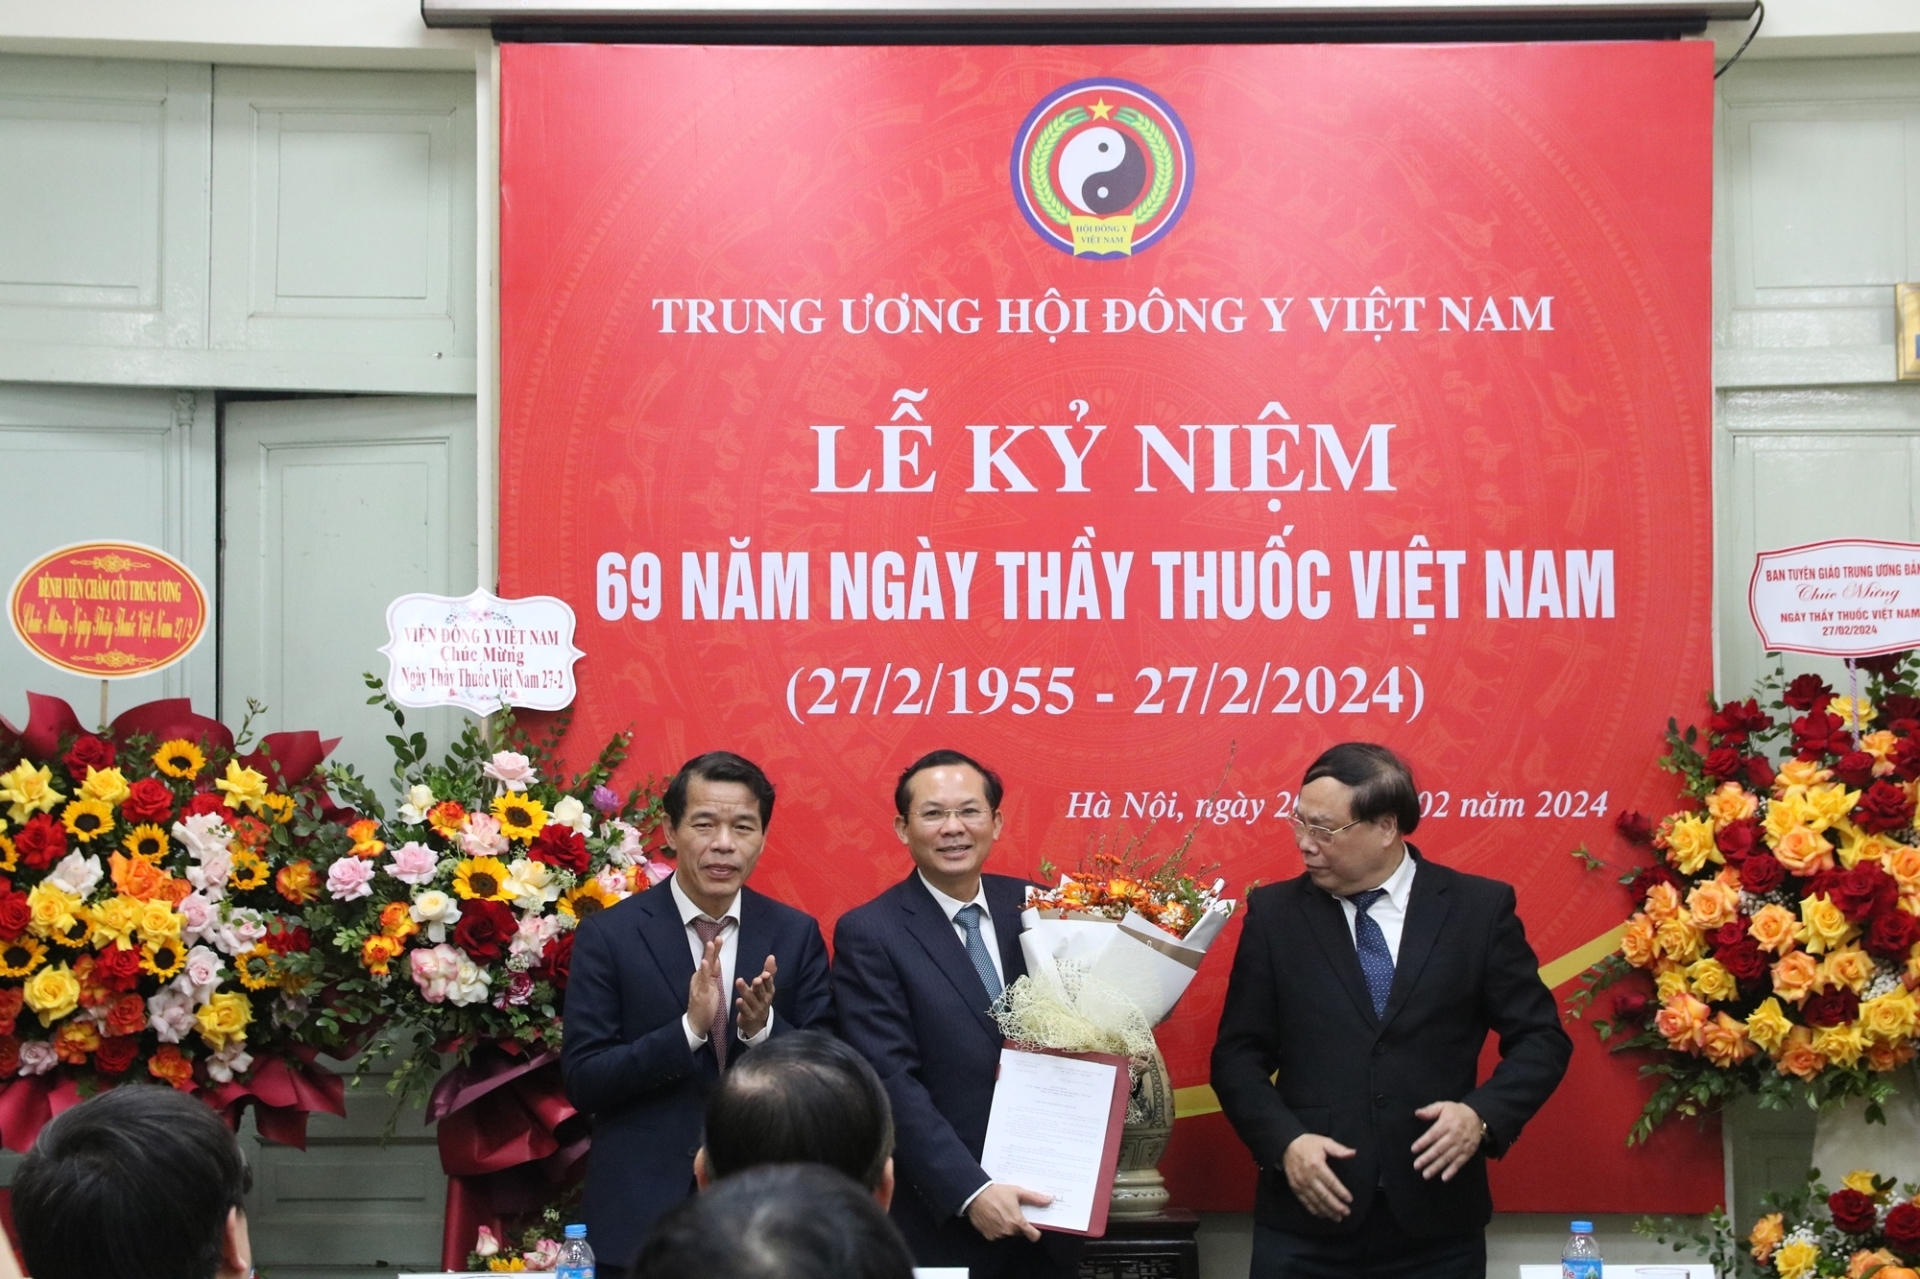 Đồng chí Vũ Thanh Mai chúc mừng đồng chí Bùi Ngọc Quý nhận quyết định Phó Chủ tịch Hội Đông y Việt Nam kiêm nhiệm.